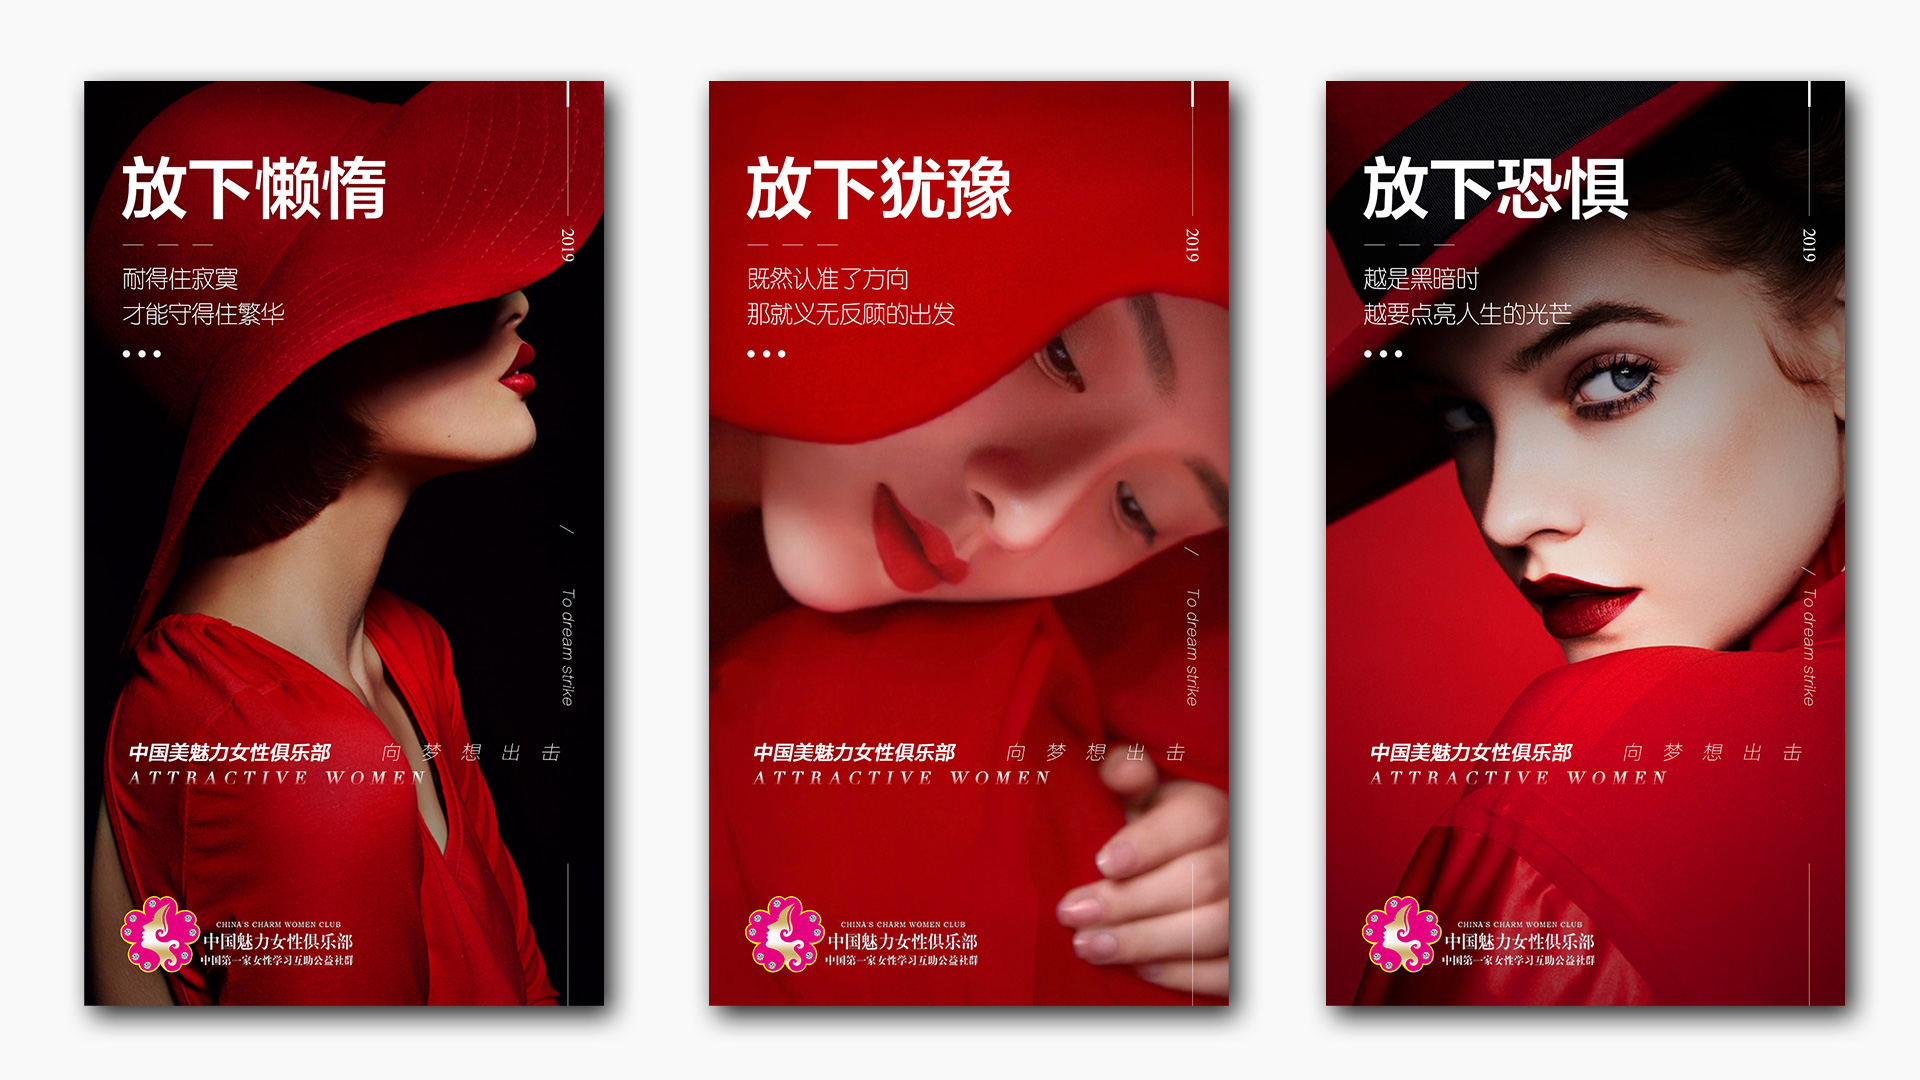 【太空人×魅力女性俱乐部】女性社群海报推广设计案例